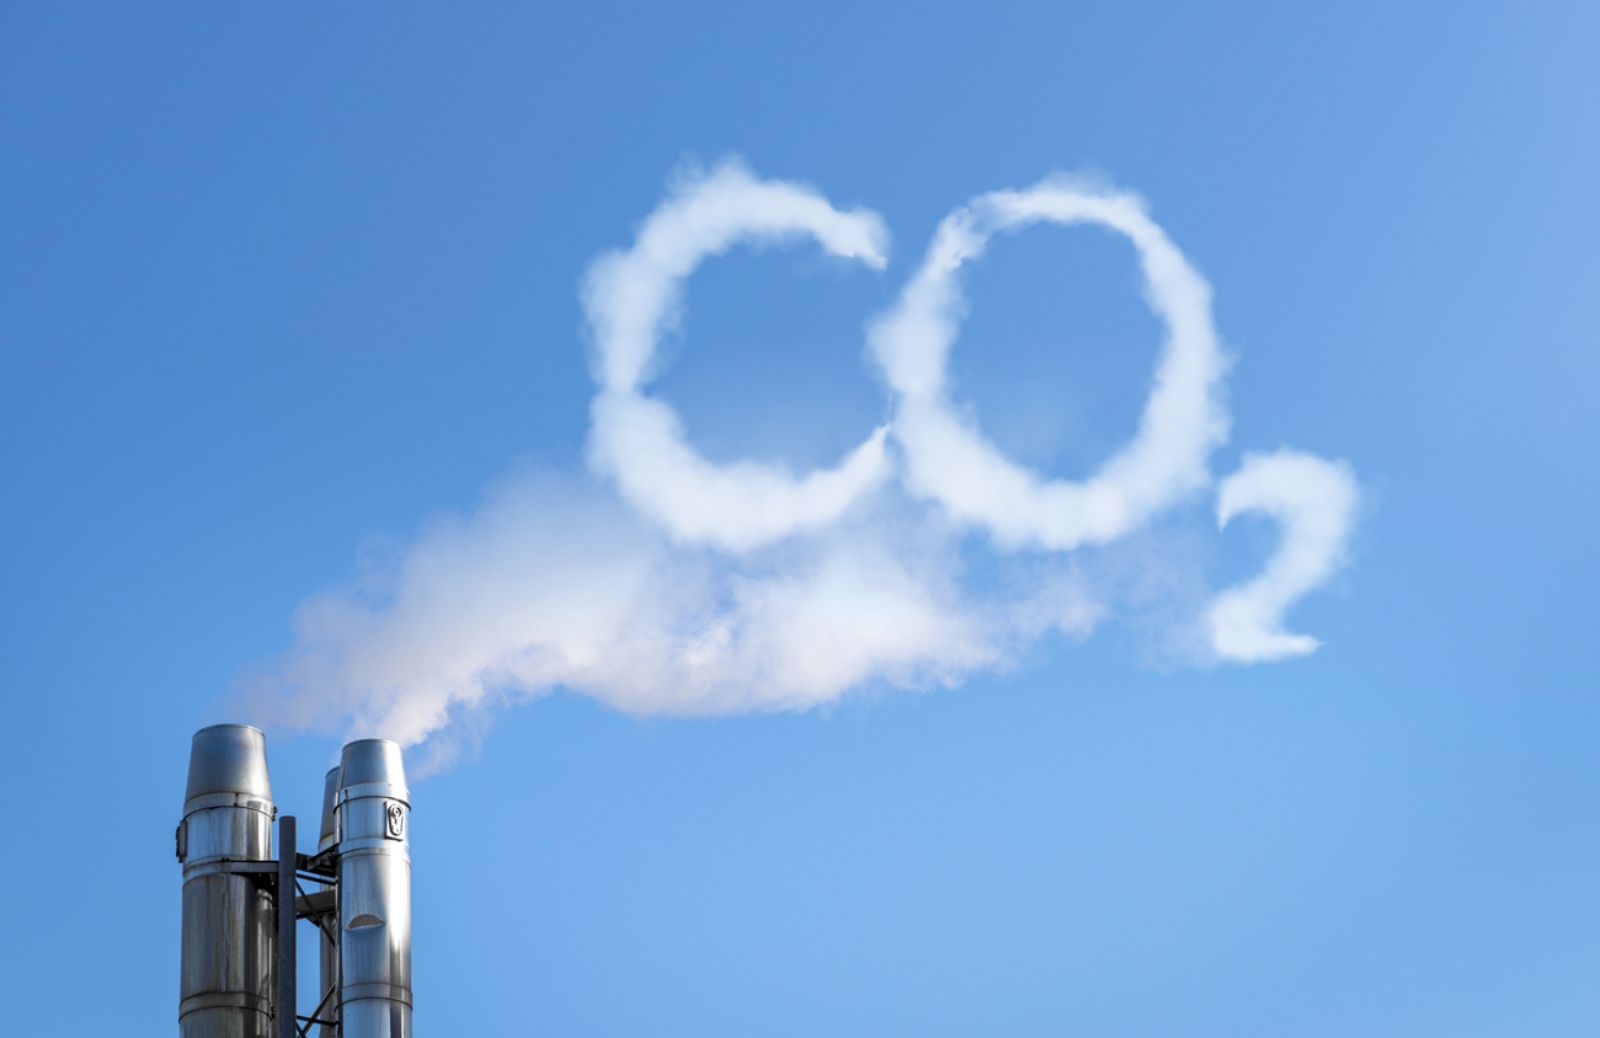  Anidride carbonica nell’atmosfera: superata nuova soglia 